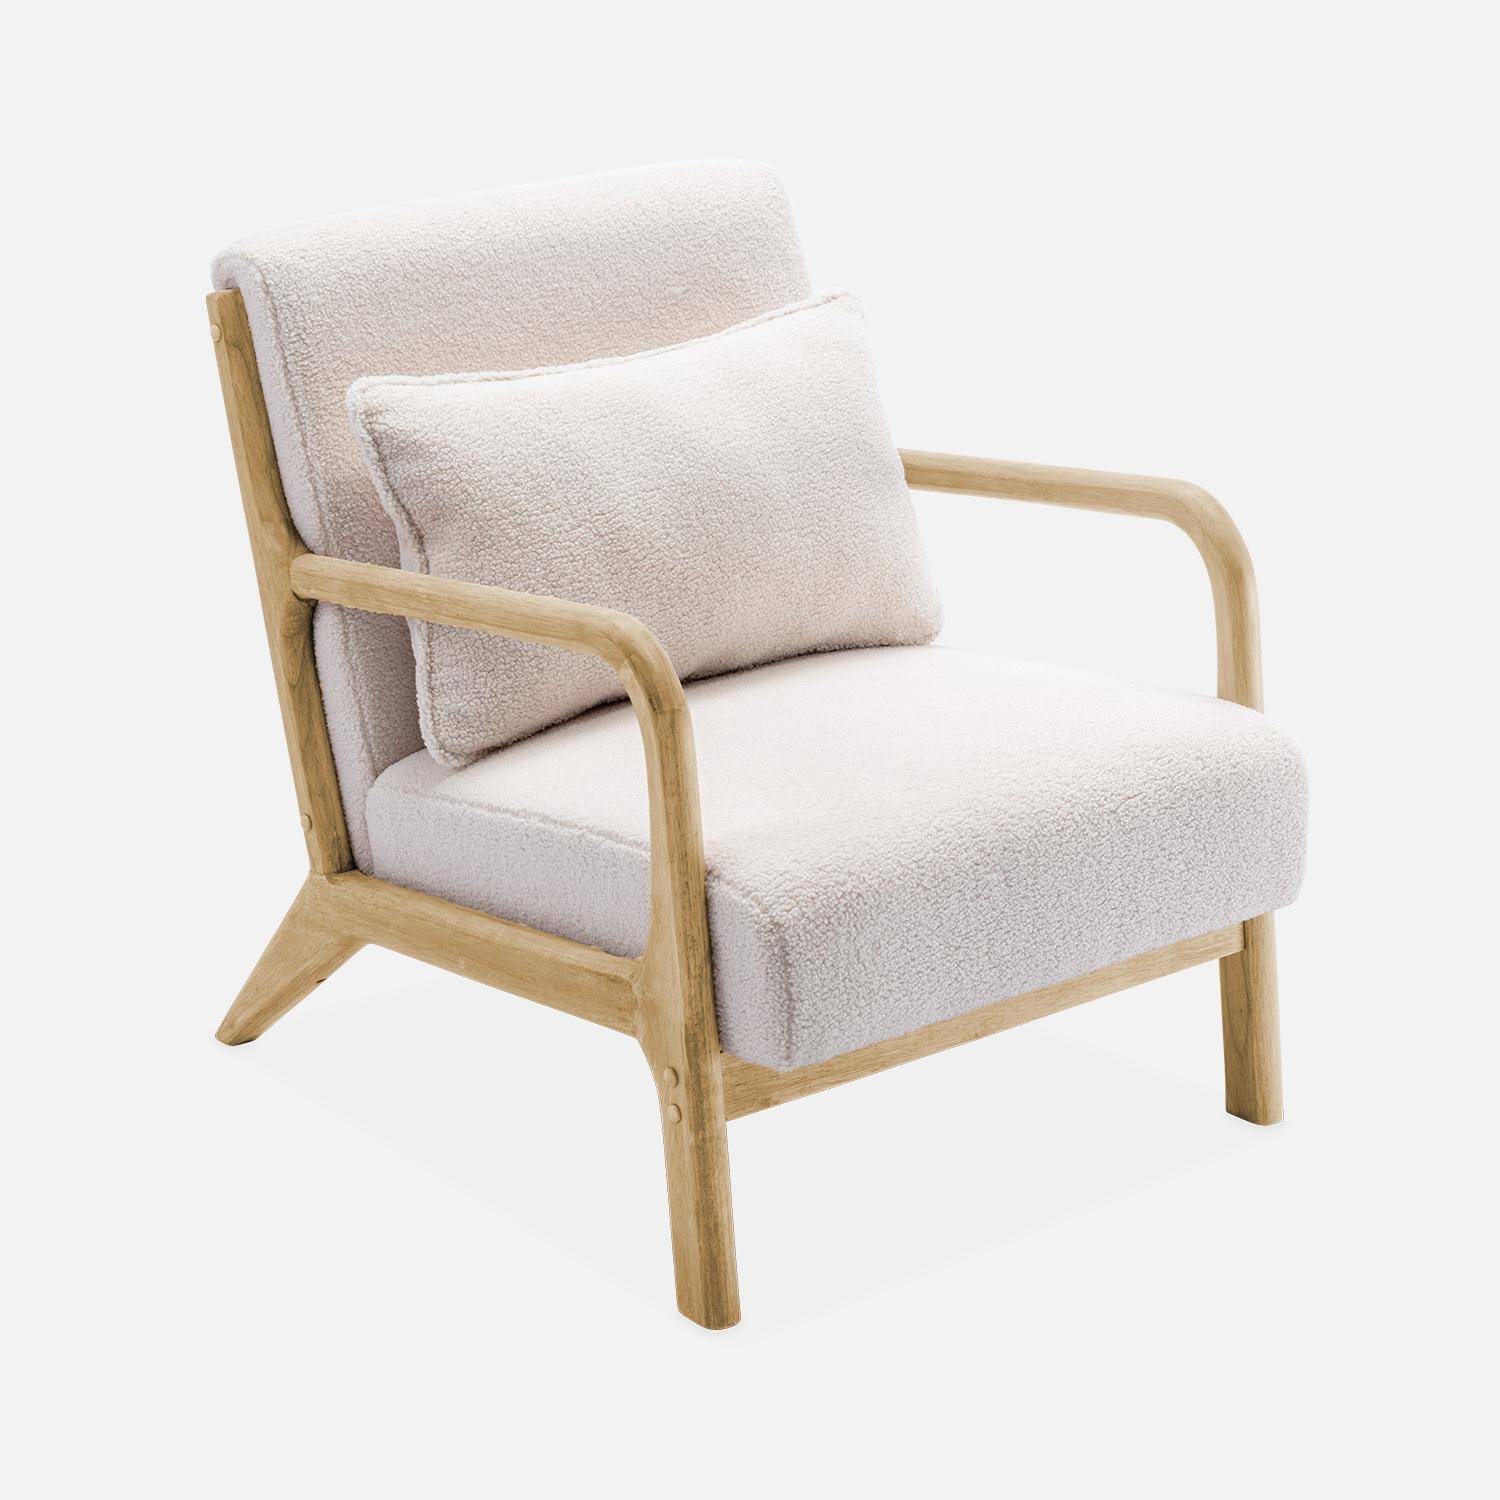 Poltrona di design in legno e tessuto bouclé, 1 seduta fissa diritta, gambe a compasso scandinave, beige Photo4